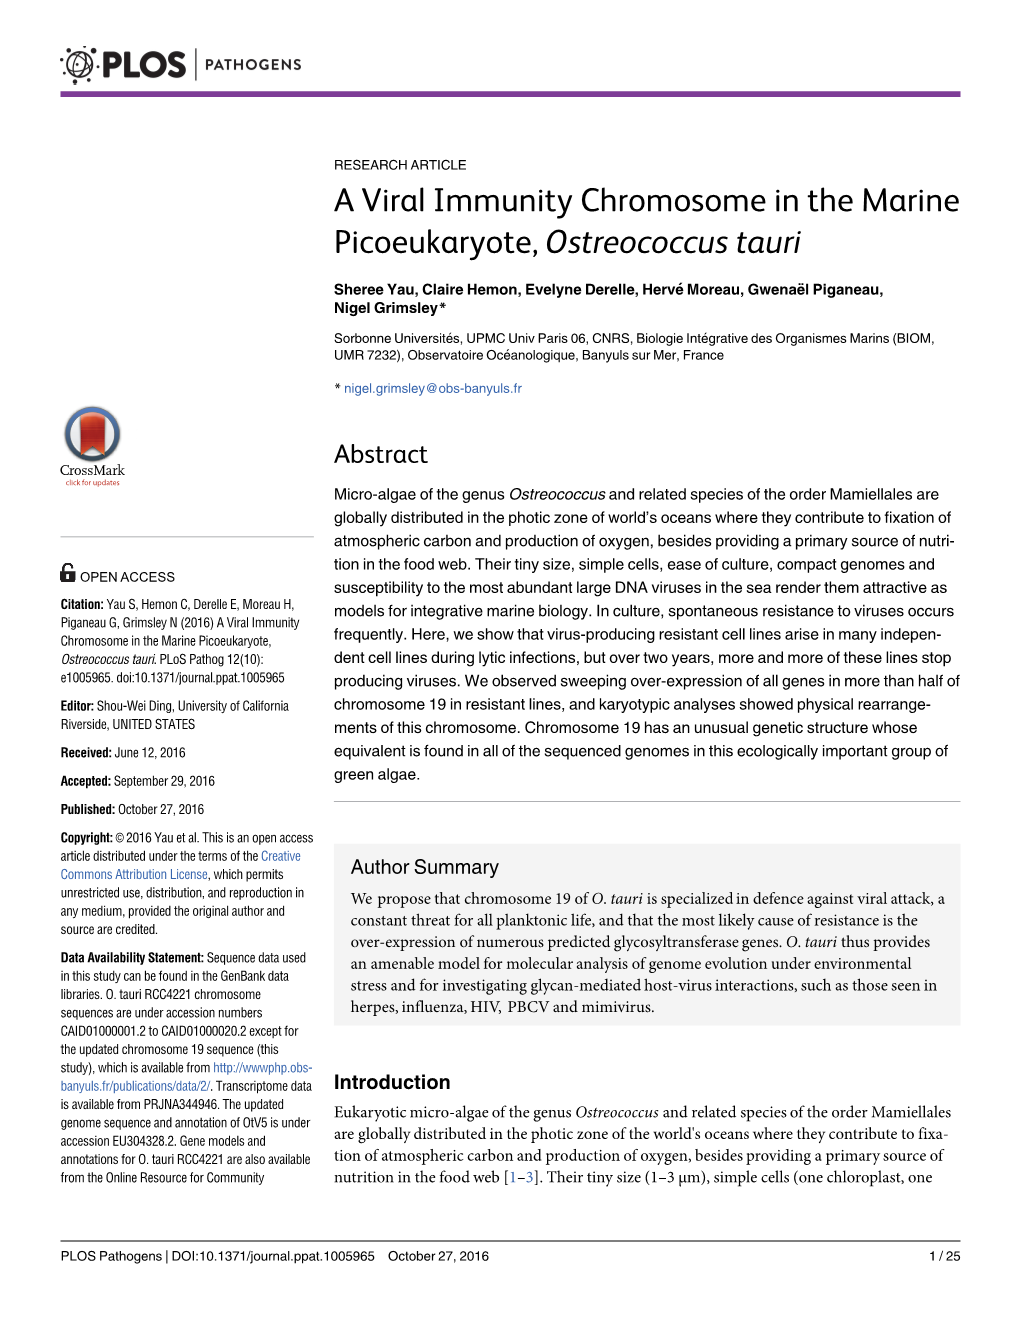 A Viral Immunity Chromosome in the Marine Picoeukaryote, Ostreococcus Tauri